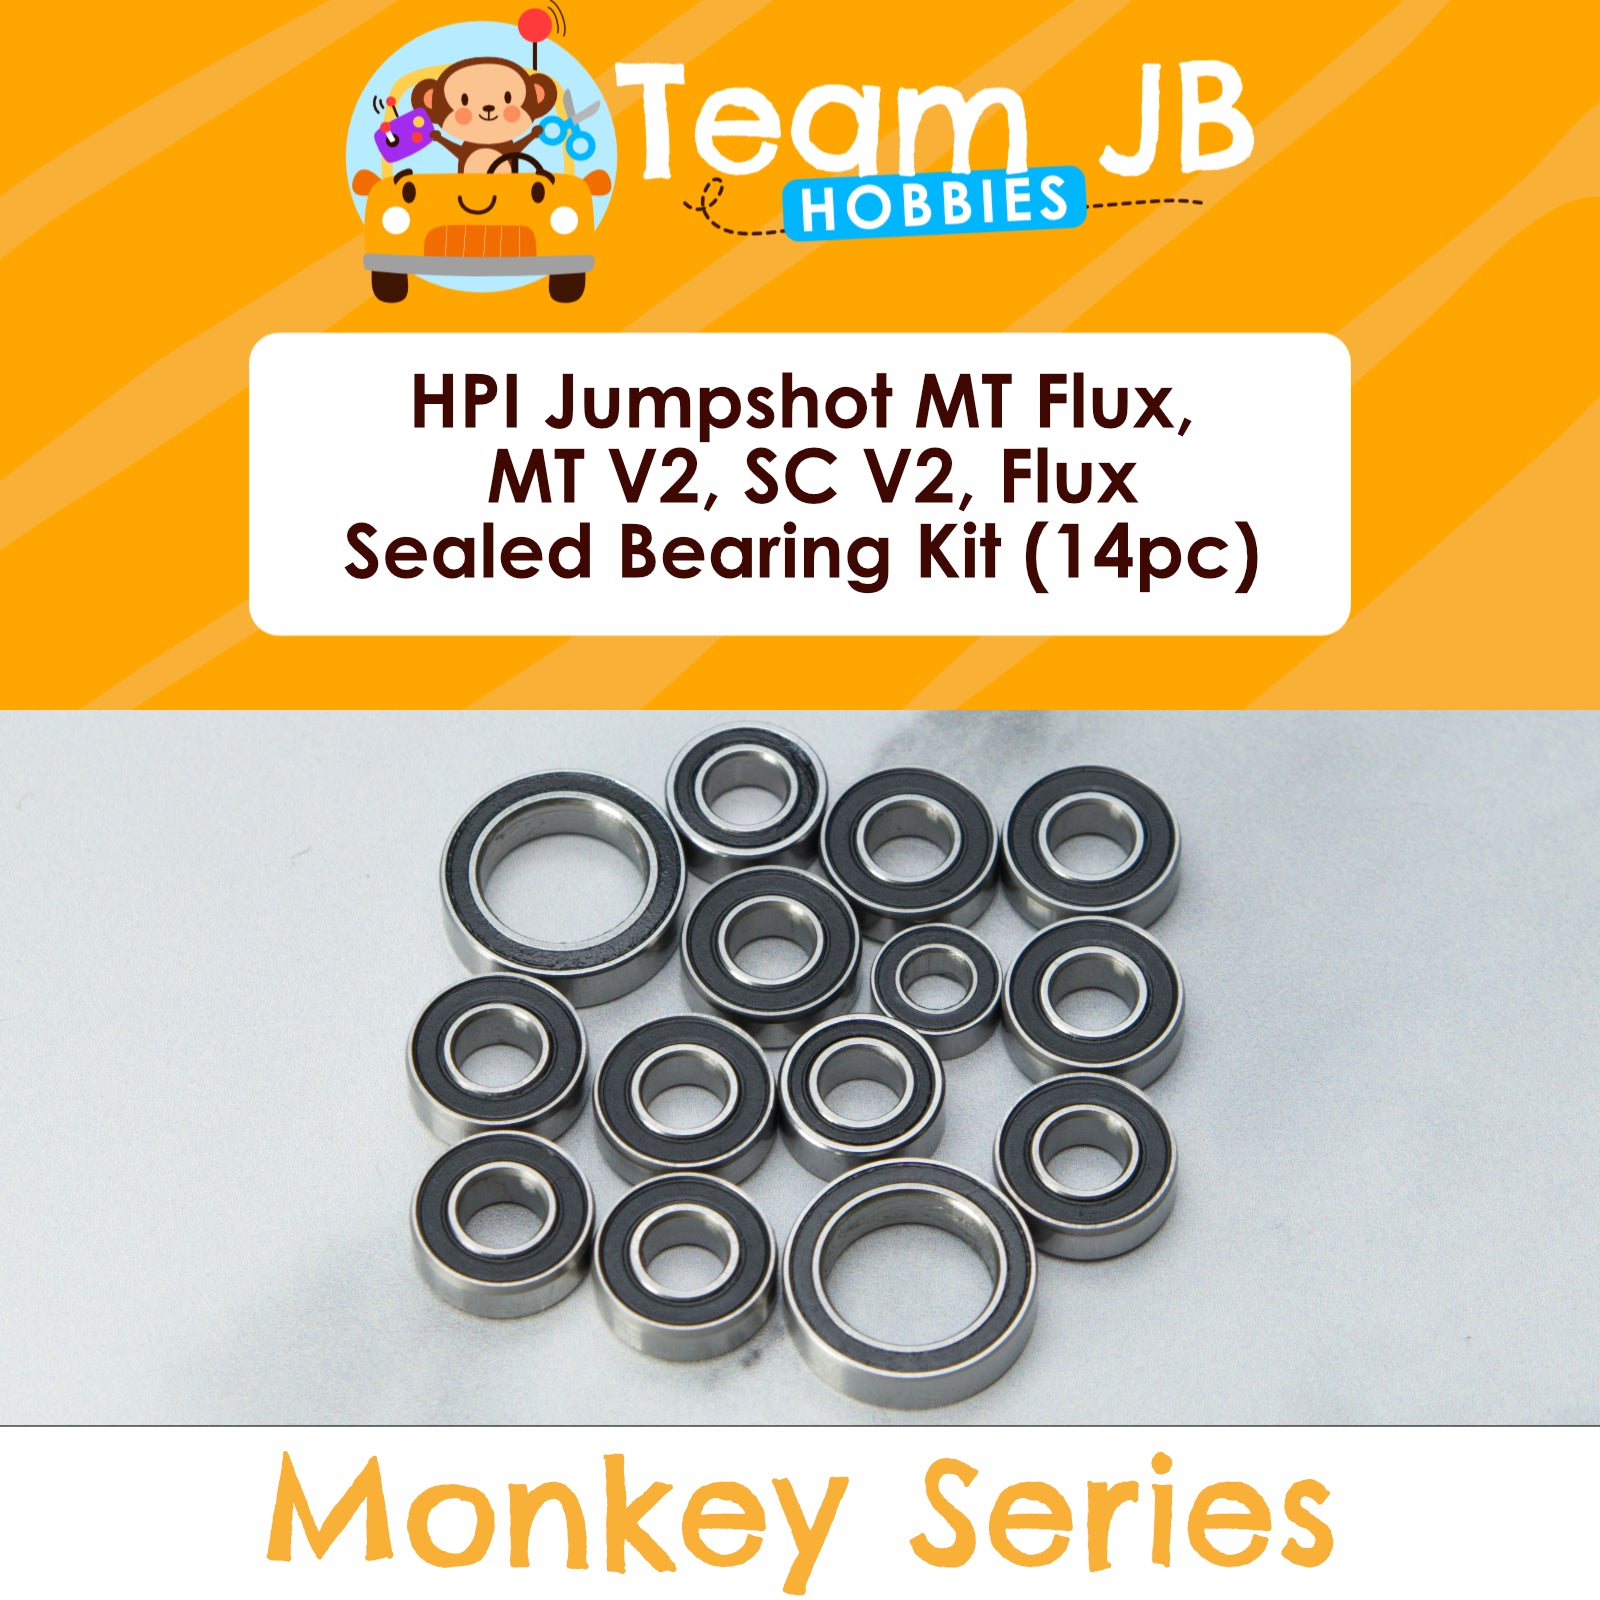 HPI Jumpshot MT Flux, MT V2, SC V2, Flux - Sealed Bearing Kit